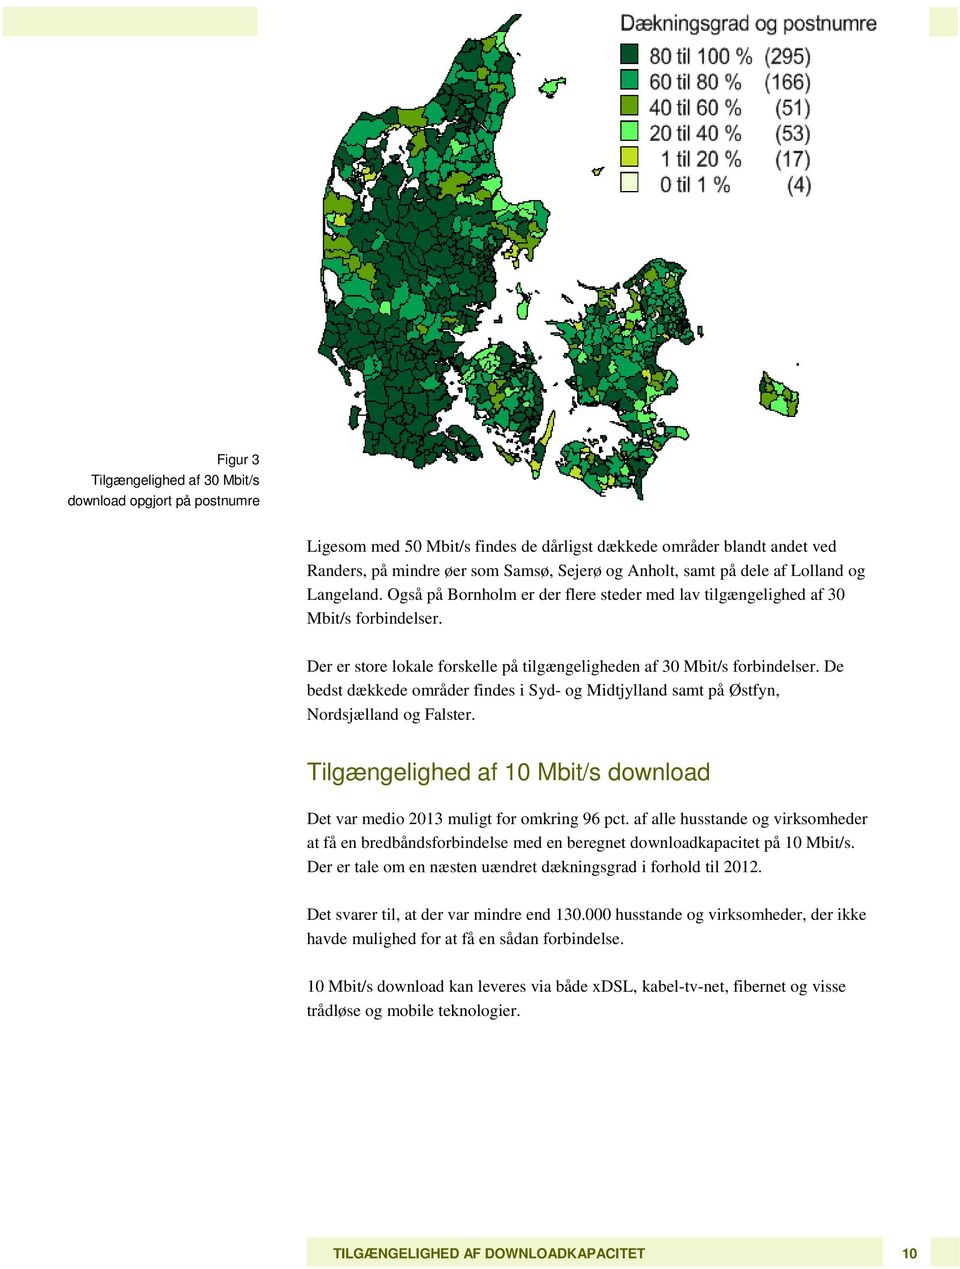 De bedst dækkede områder findes i Syd- og Midtjylland samt på Østfyn, Nordsjælland og Falster. Tilgængelighed af 10 Mbit/s download Det var medio 2013 muligt for omkring 96 pct.